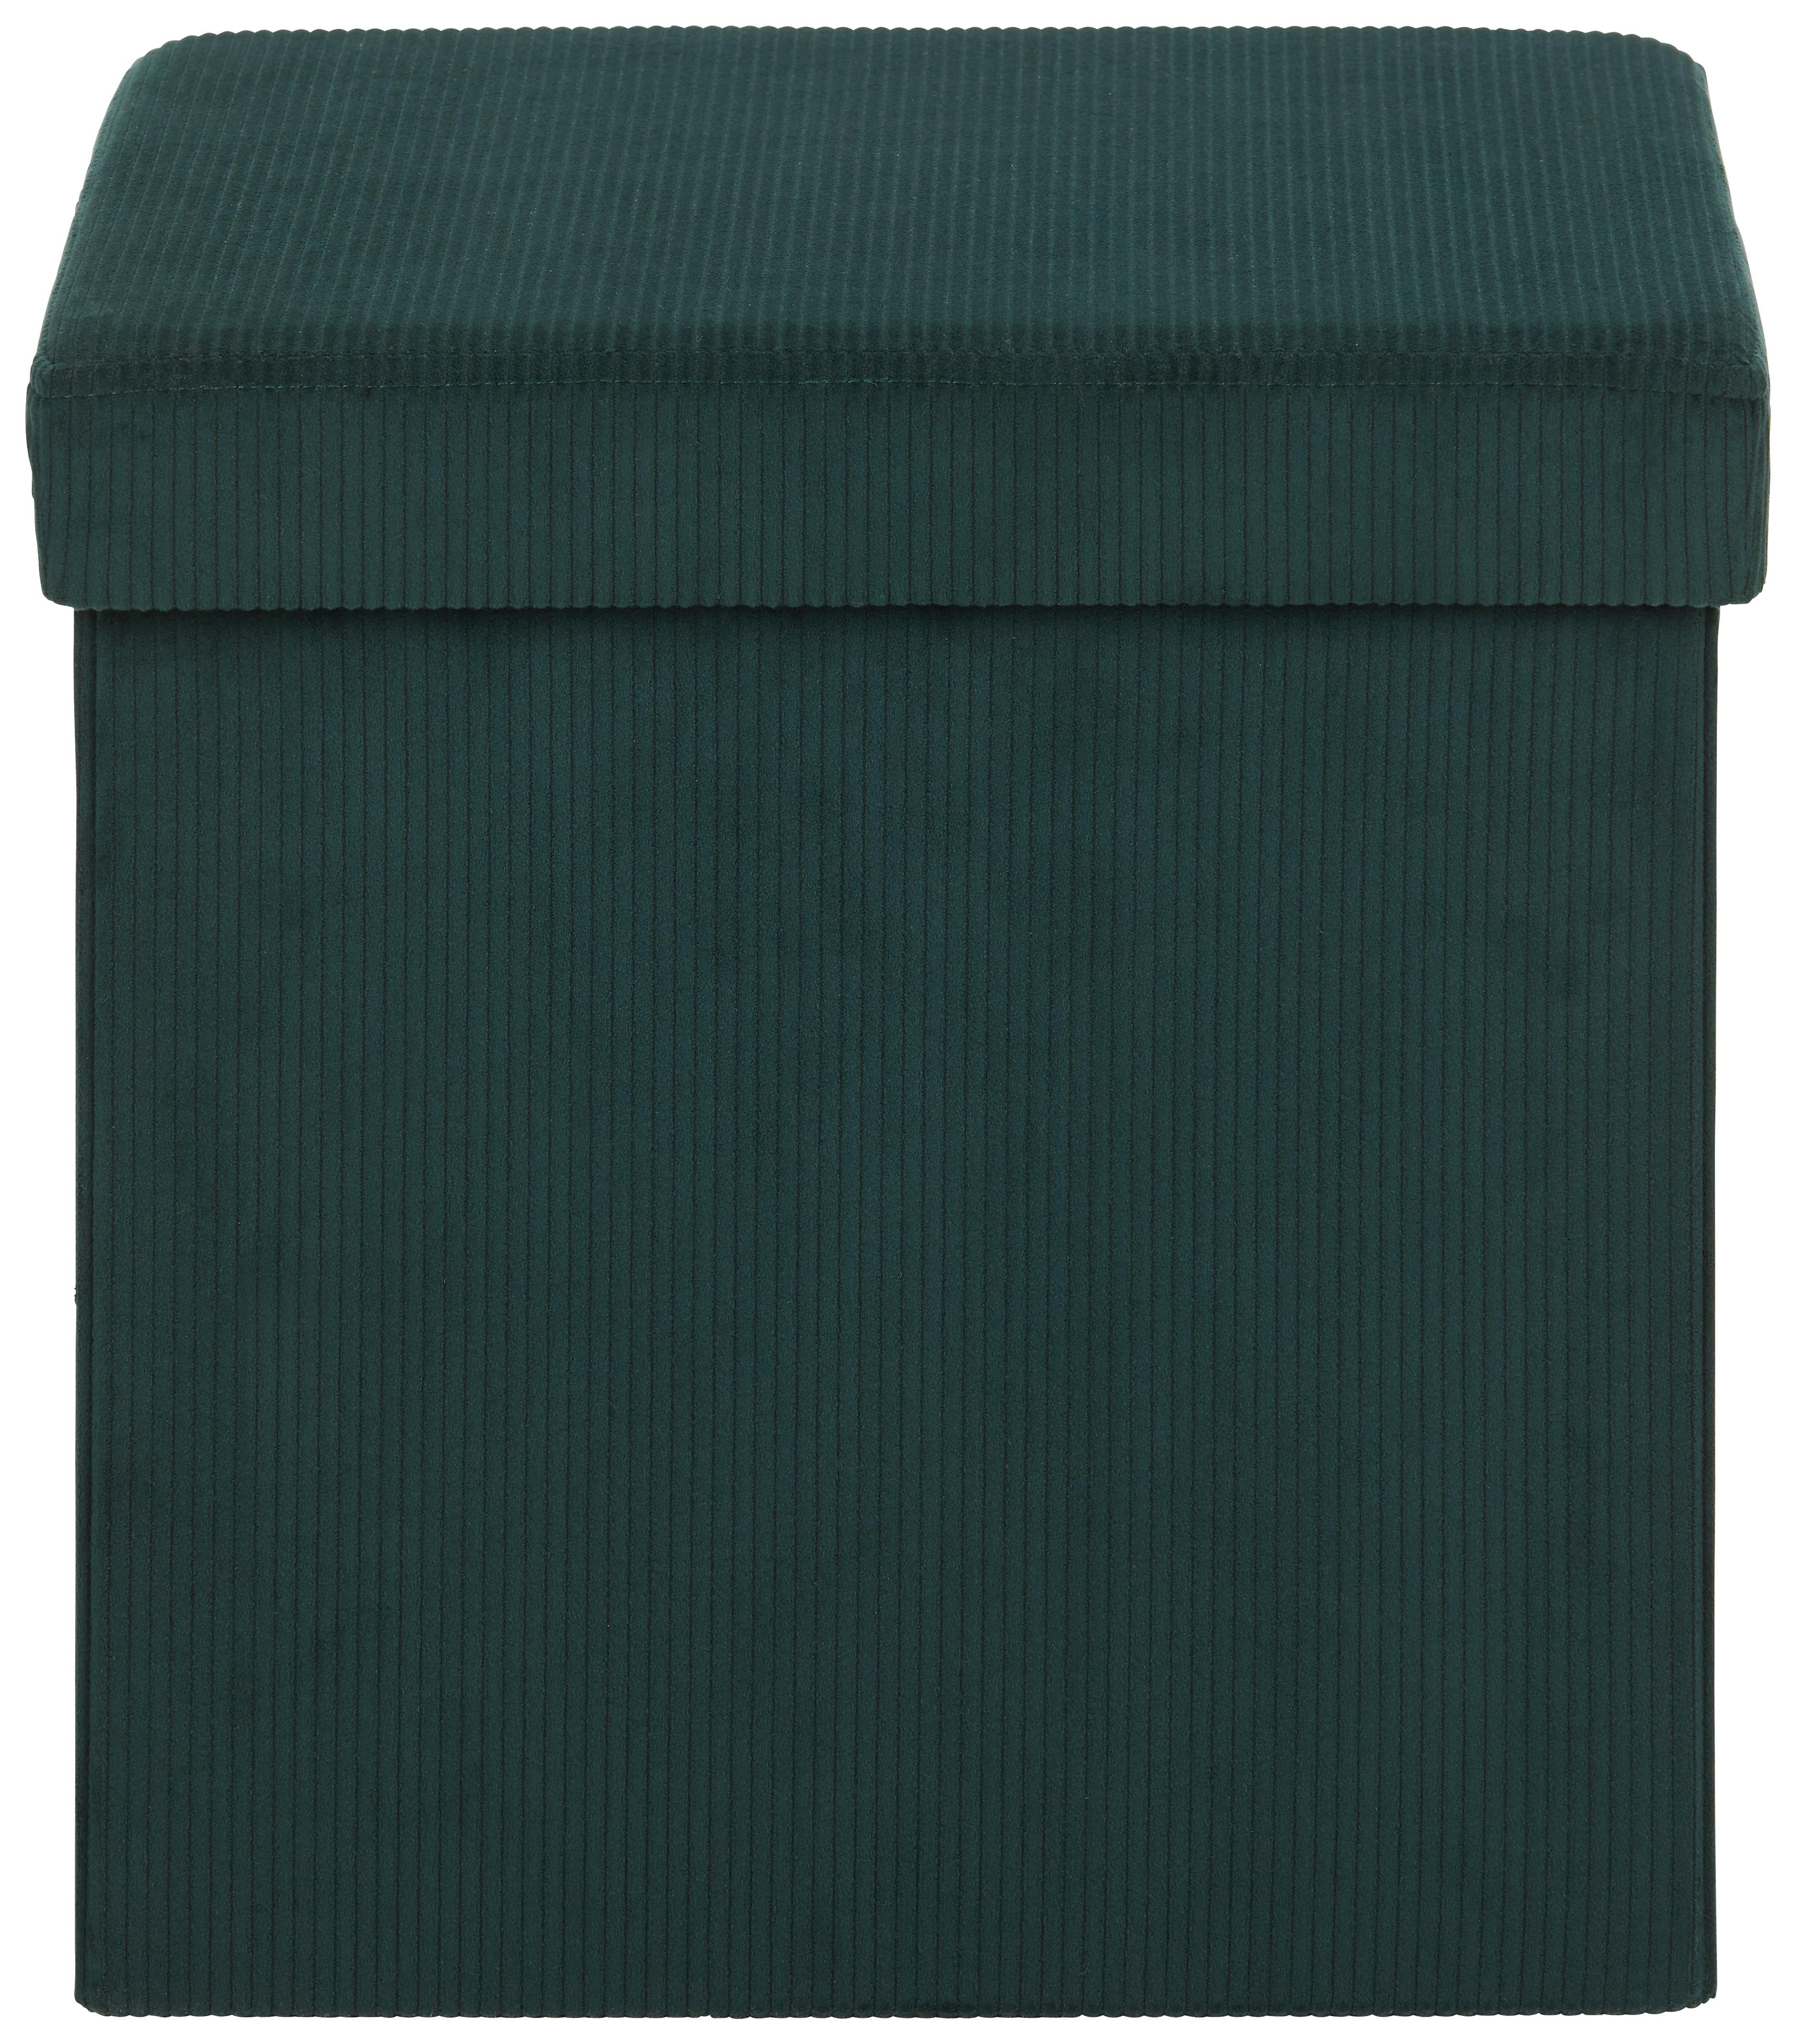 Zaboj Za Sedenje Cord -Sb- - temno zelena, tekstil (38/38/38cm) - Modern Living